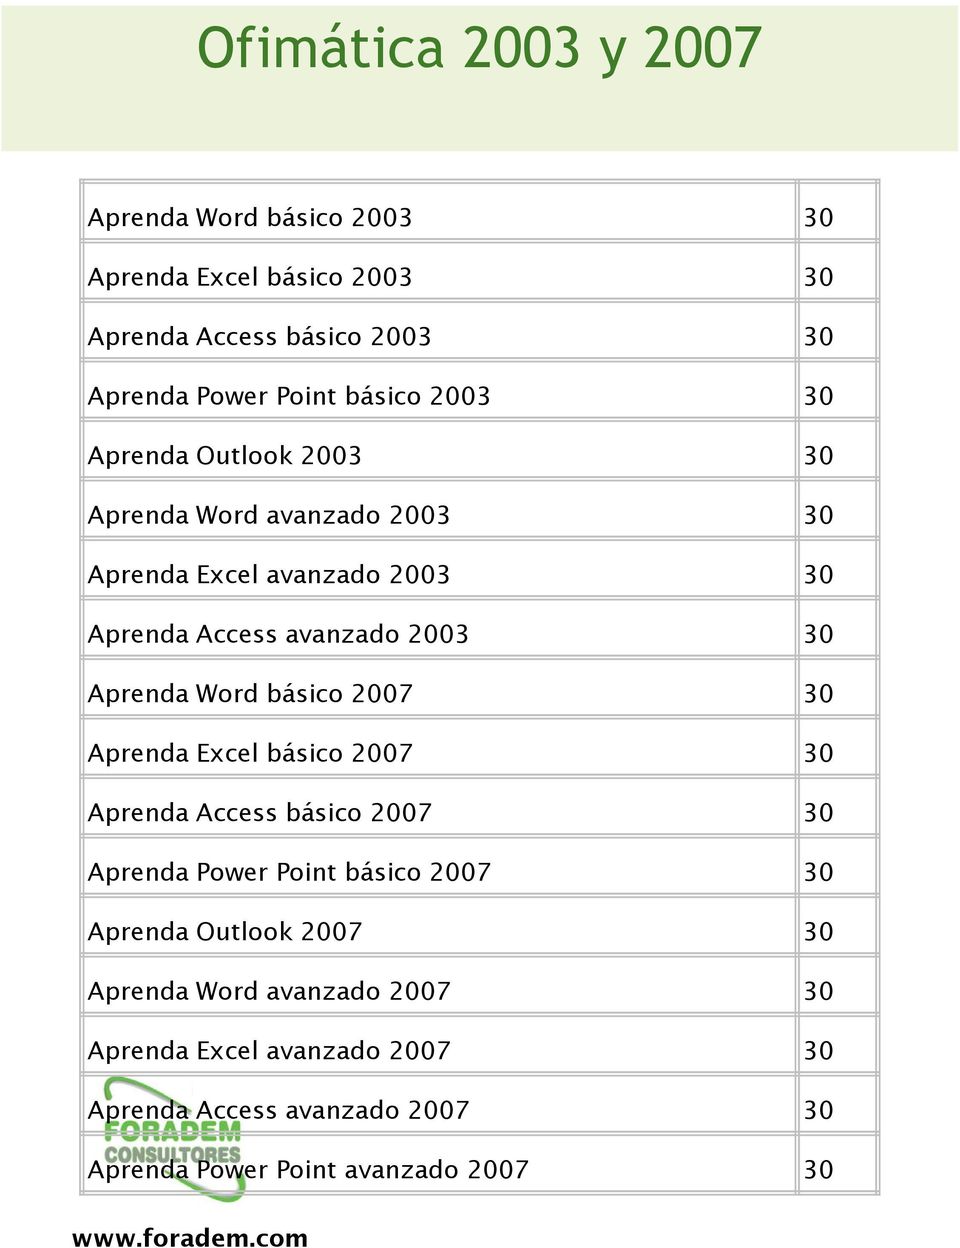 Aprenda Word básico 2007 30 Aprenda Excel básico 2007 30 Aprenda Access básico 2007 30 Aprenda Power Point básico 2007 30 Aprenda